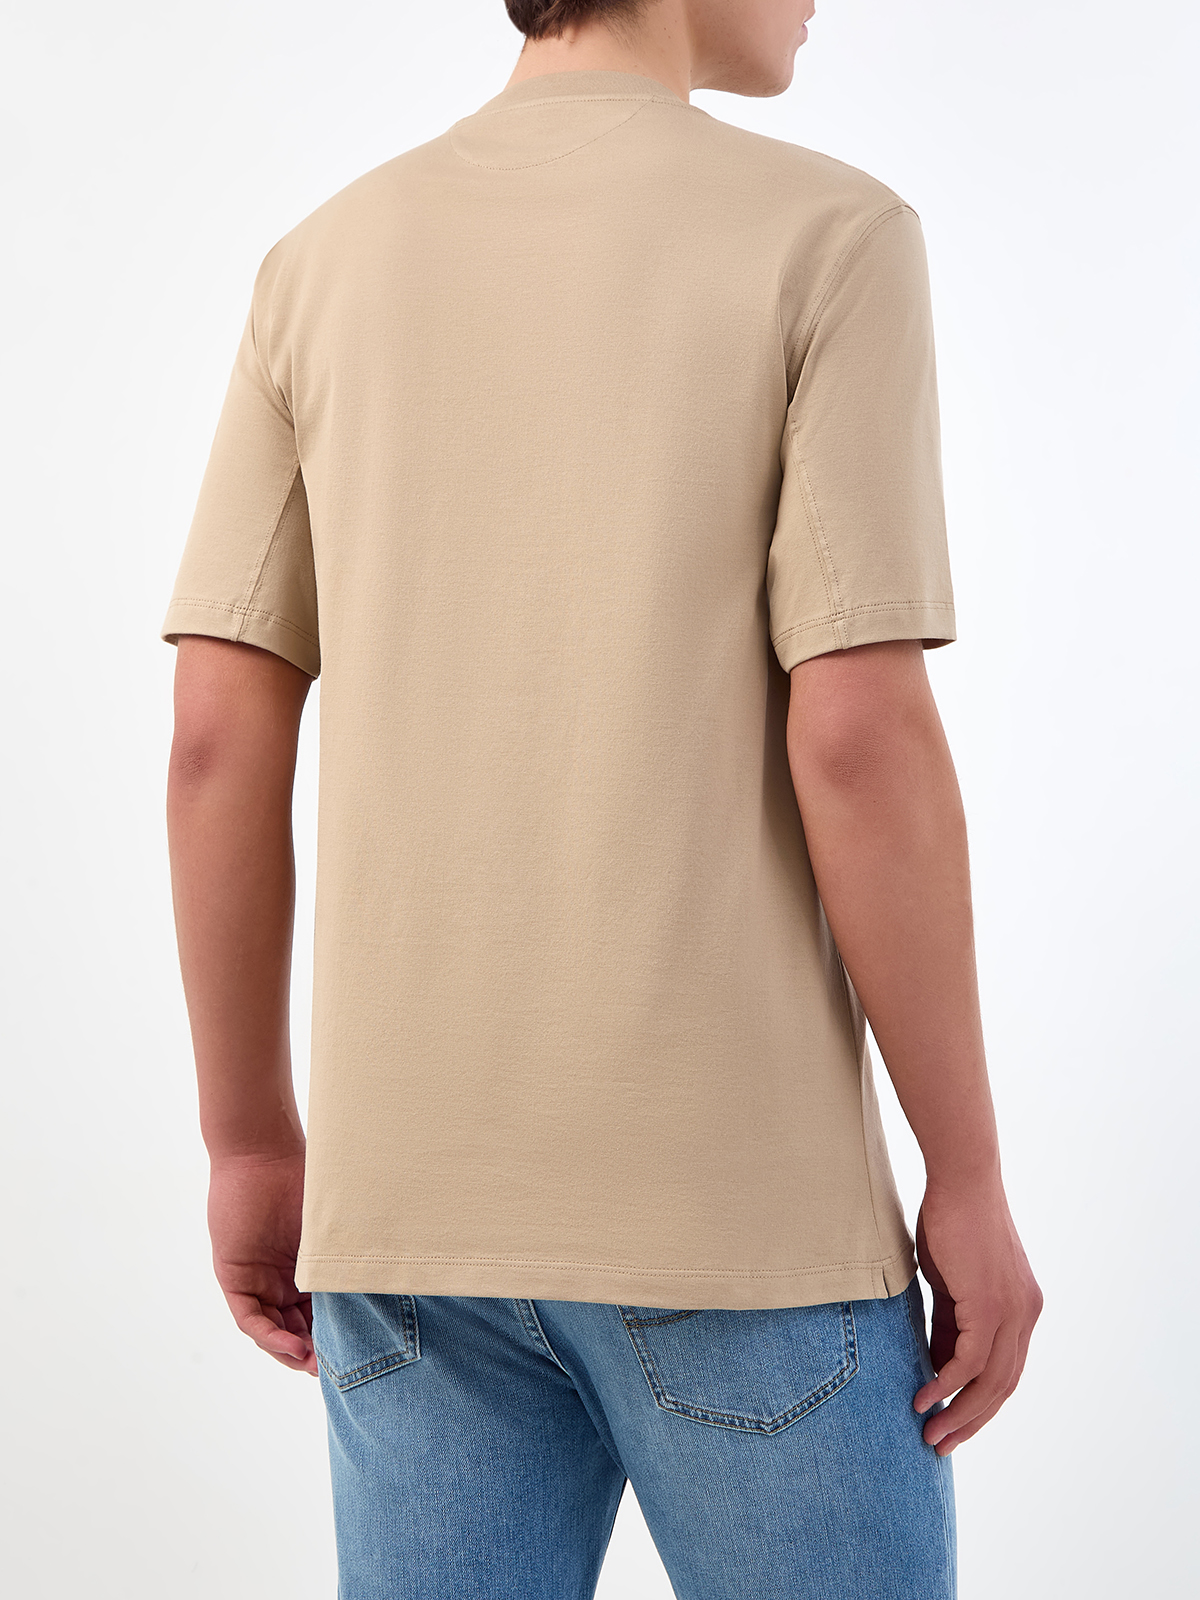 Однотонная футболка из хлопка джерси с вышитым логотипом BRUNELLO CUCINELLI, цвет бежевый, размер 50;52;54;56 - фото 4